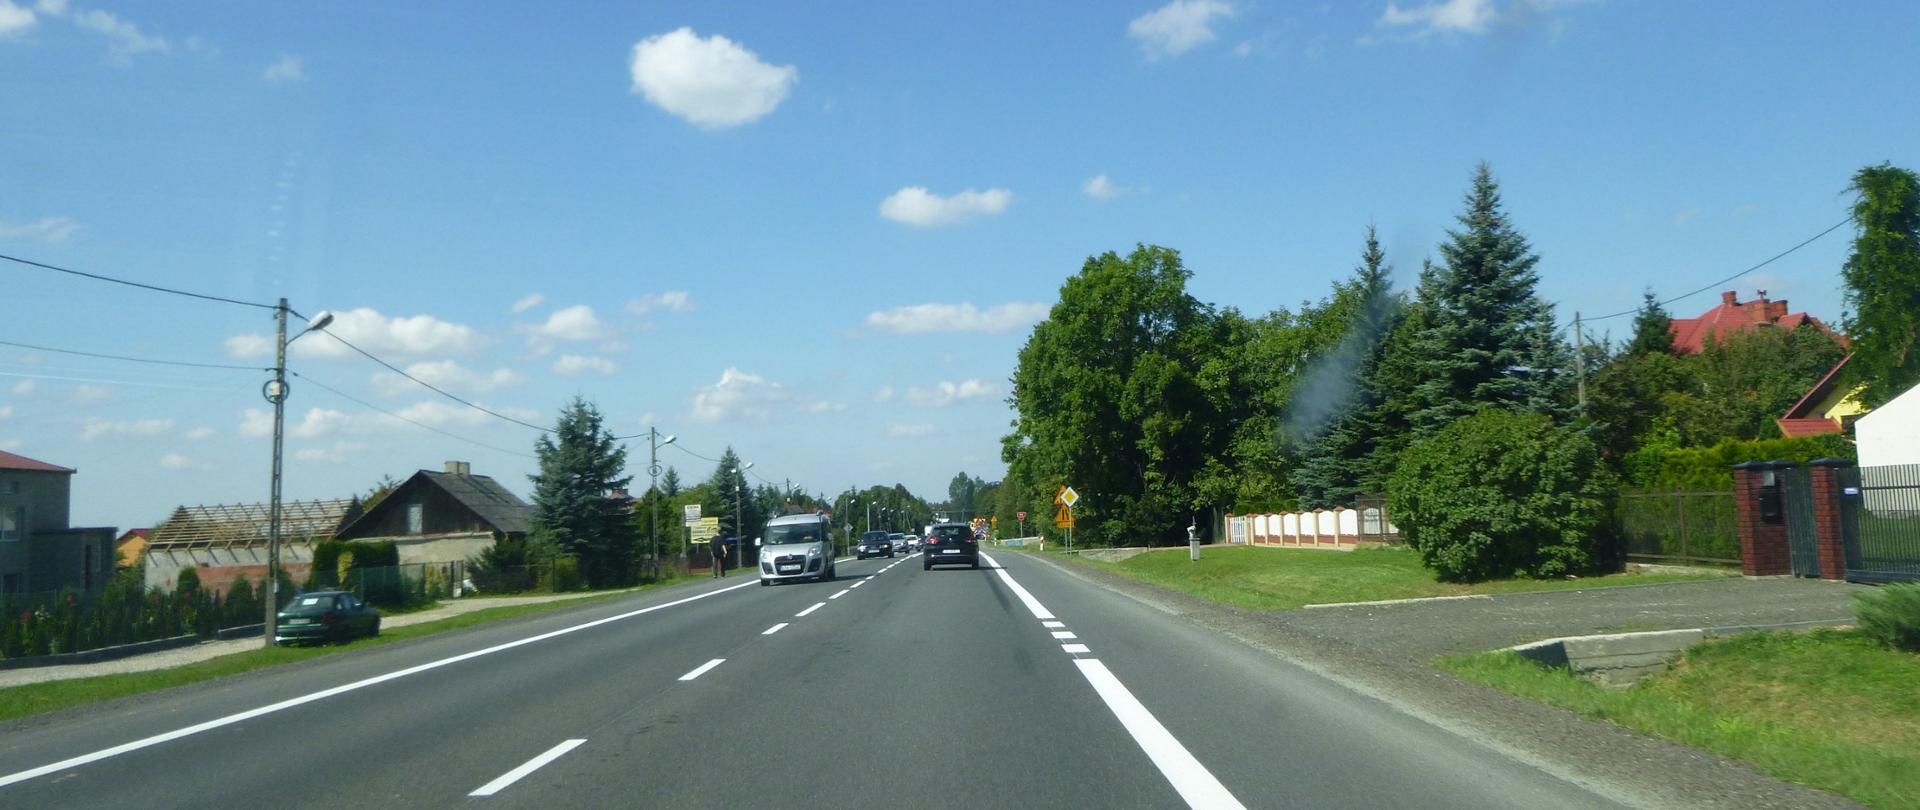 DK94 w Jerzmanowicach - zdjęcie drogi jednojezdniowej o dwóch pasach ruchu (po jednym w każdym kierunku) z wydzielonym poboczem 